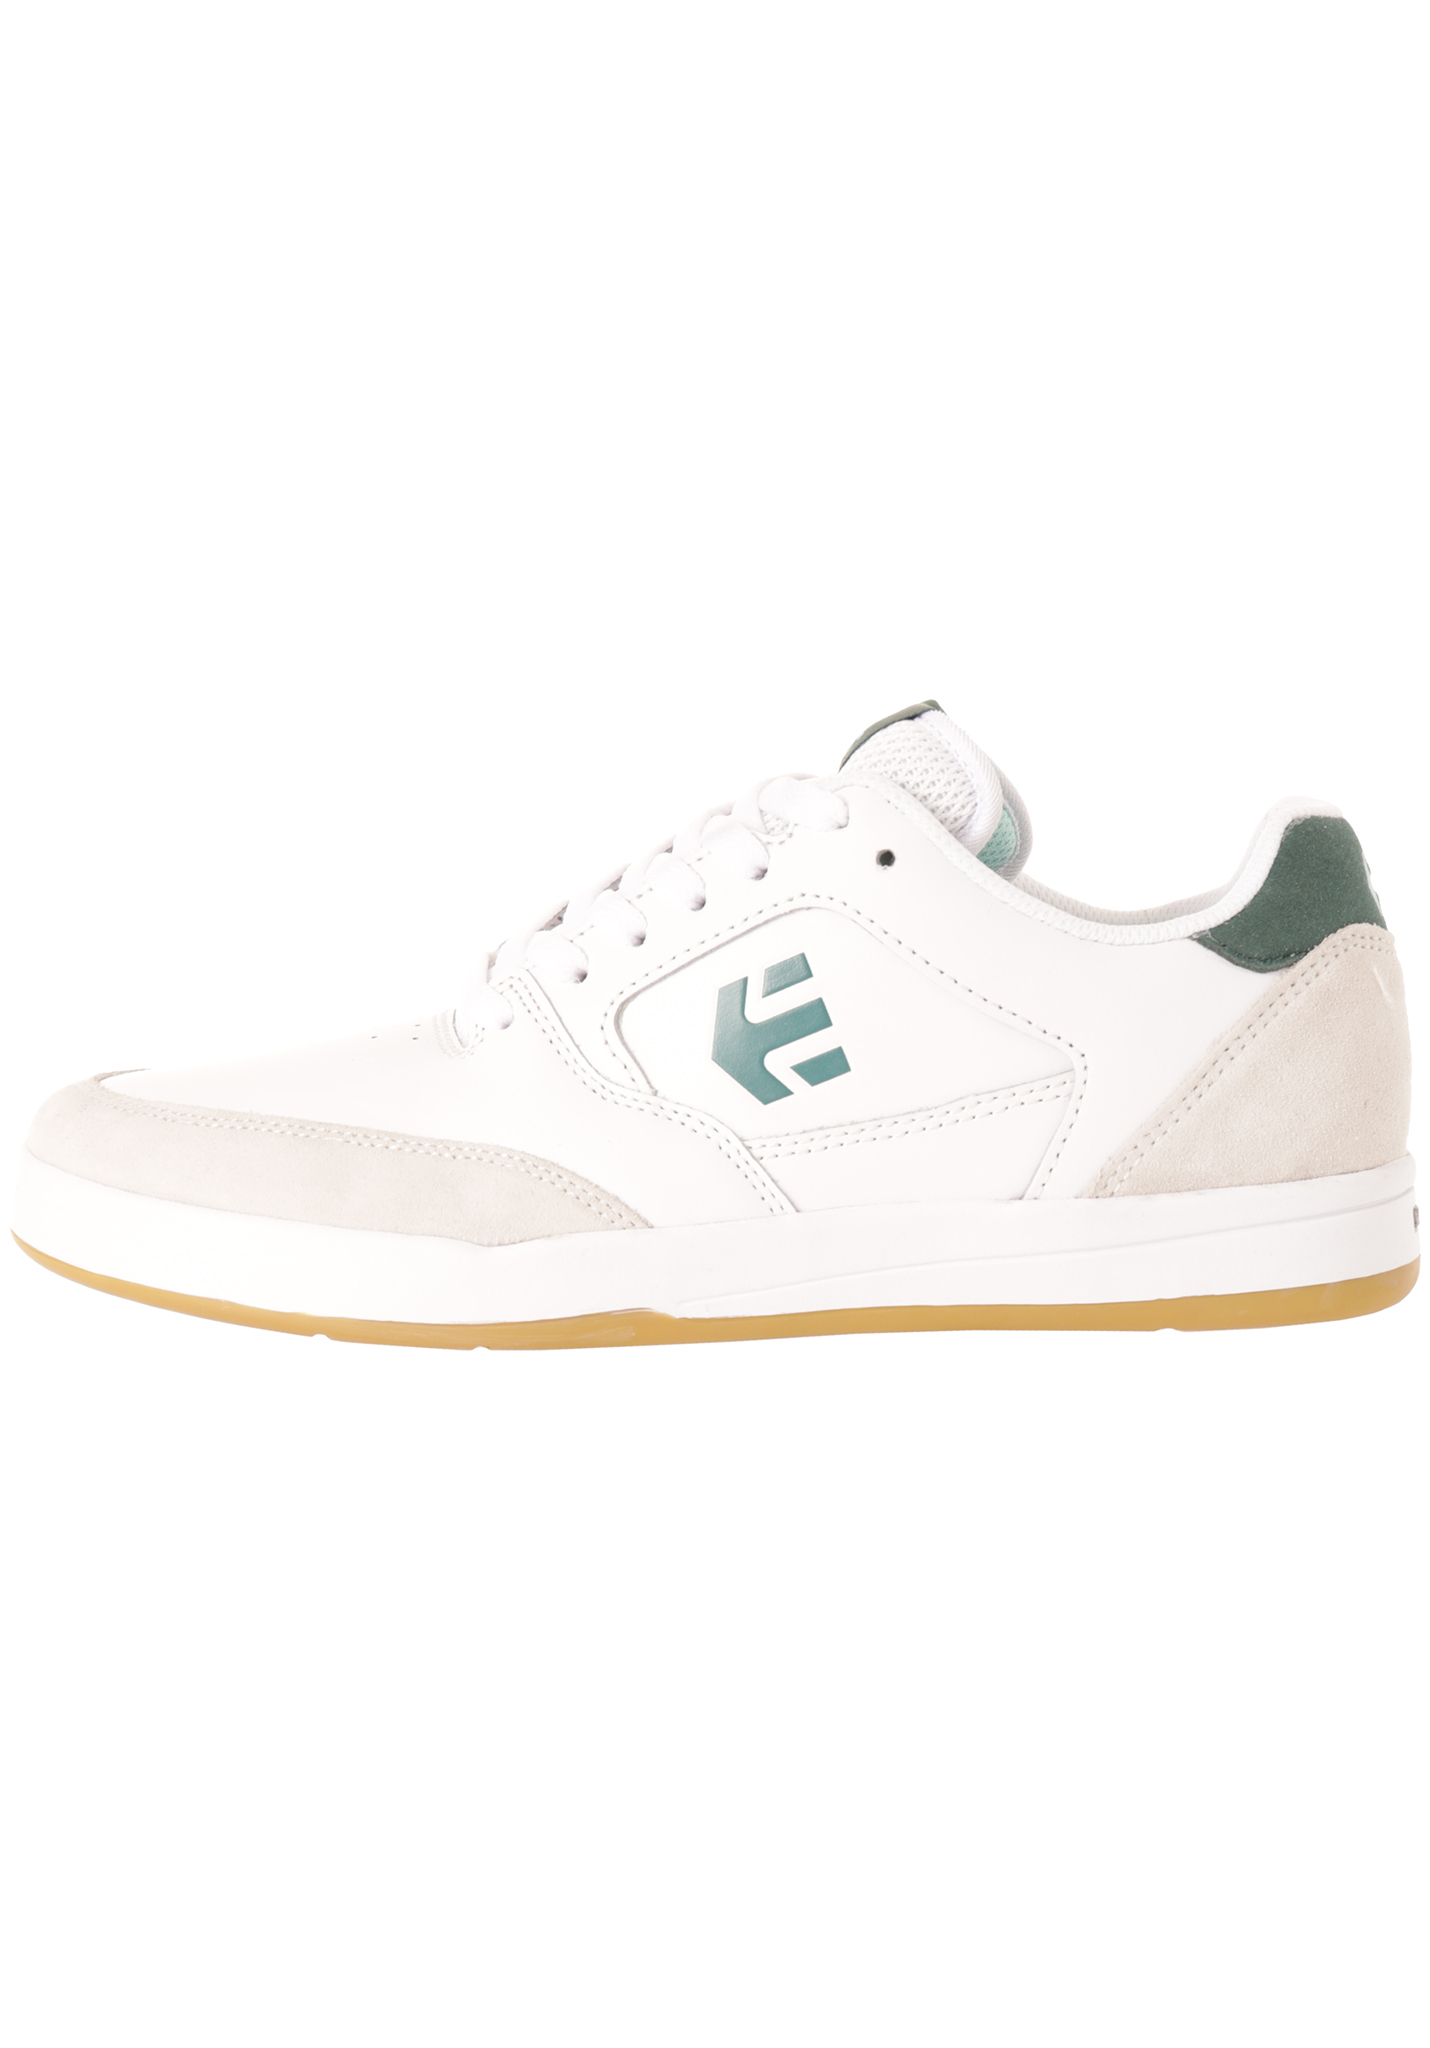 Etnies Veer Skateschuhe white - green 45